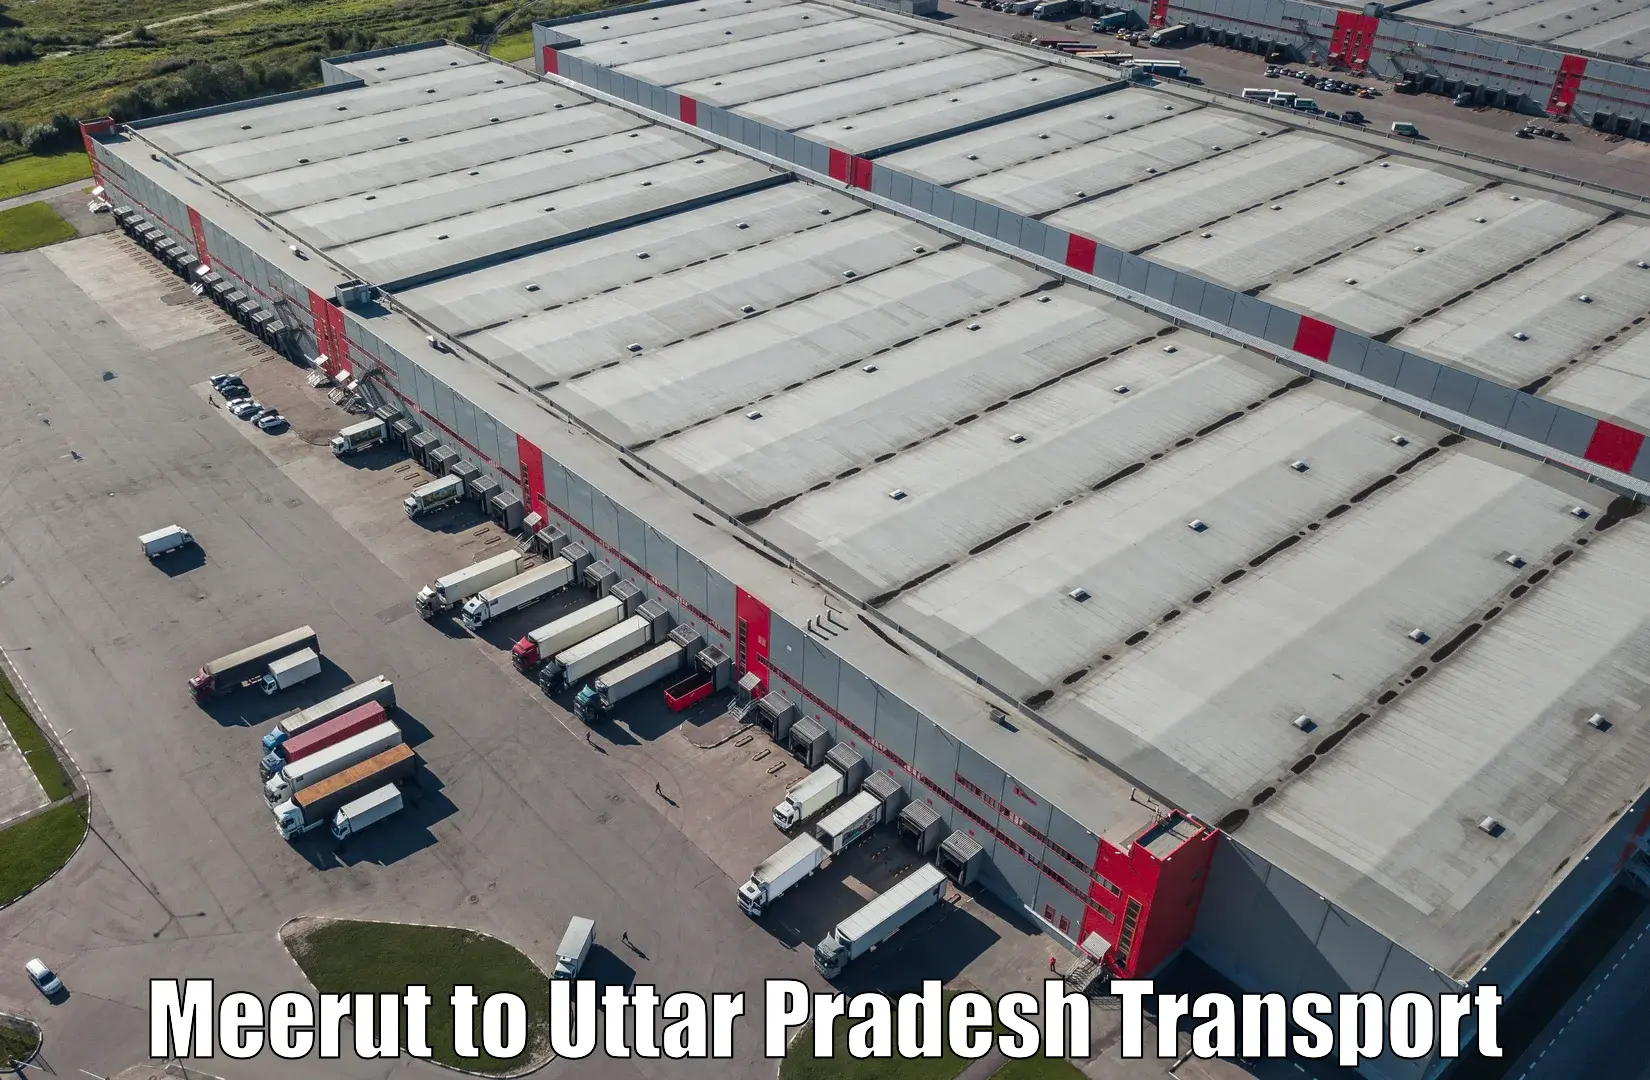 Daily transport service Meerut to Nariwari